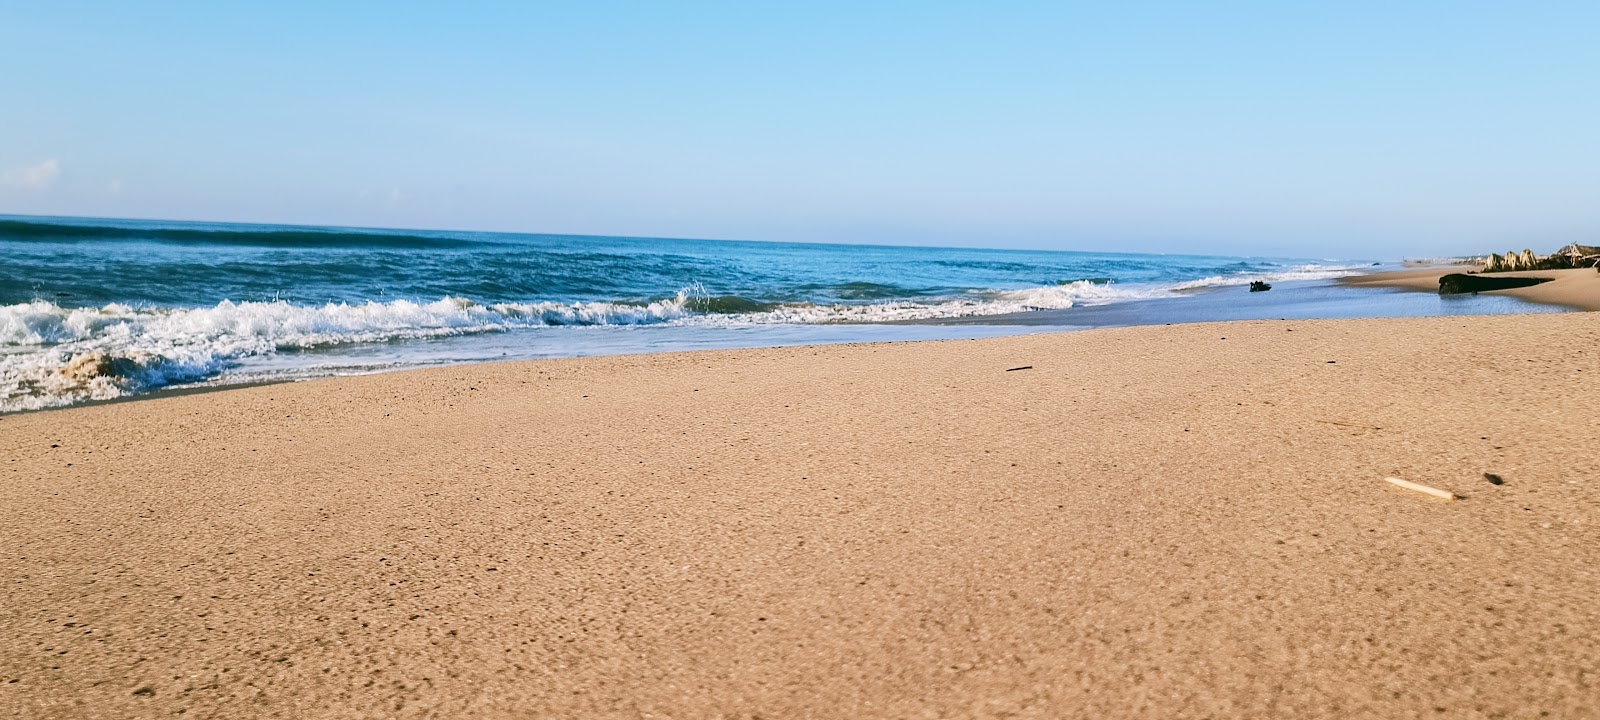 Gurayyapeta Beach'in fotoğrafı parlak kum yüzey ile